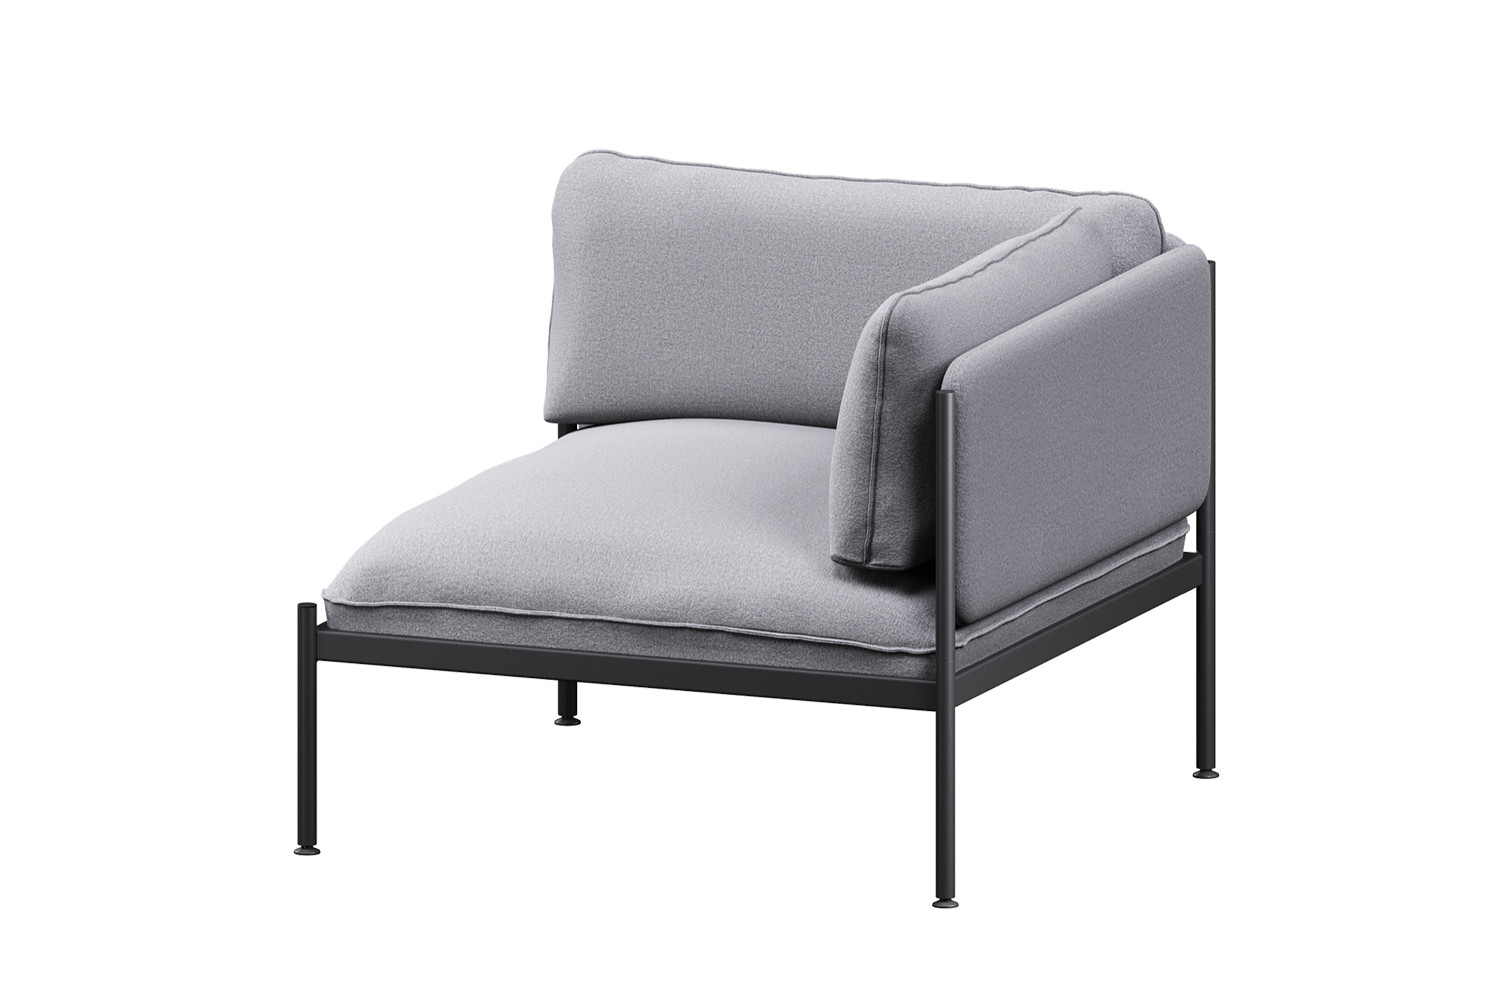 Toom Modular Eck-Sessel in Pale Grey  präsentiert im Onlineshop von KAQTU Design AG. Sessel mit Armlehnen ist von Noo.ma